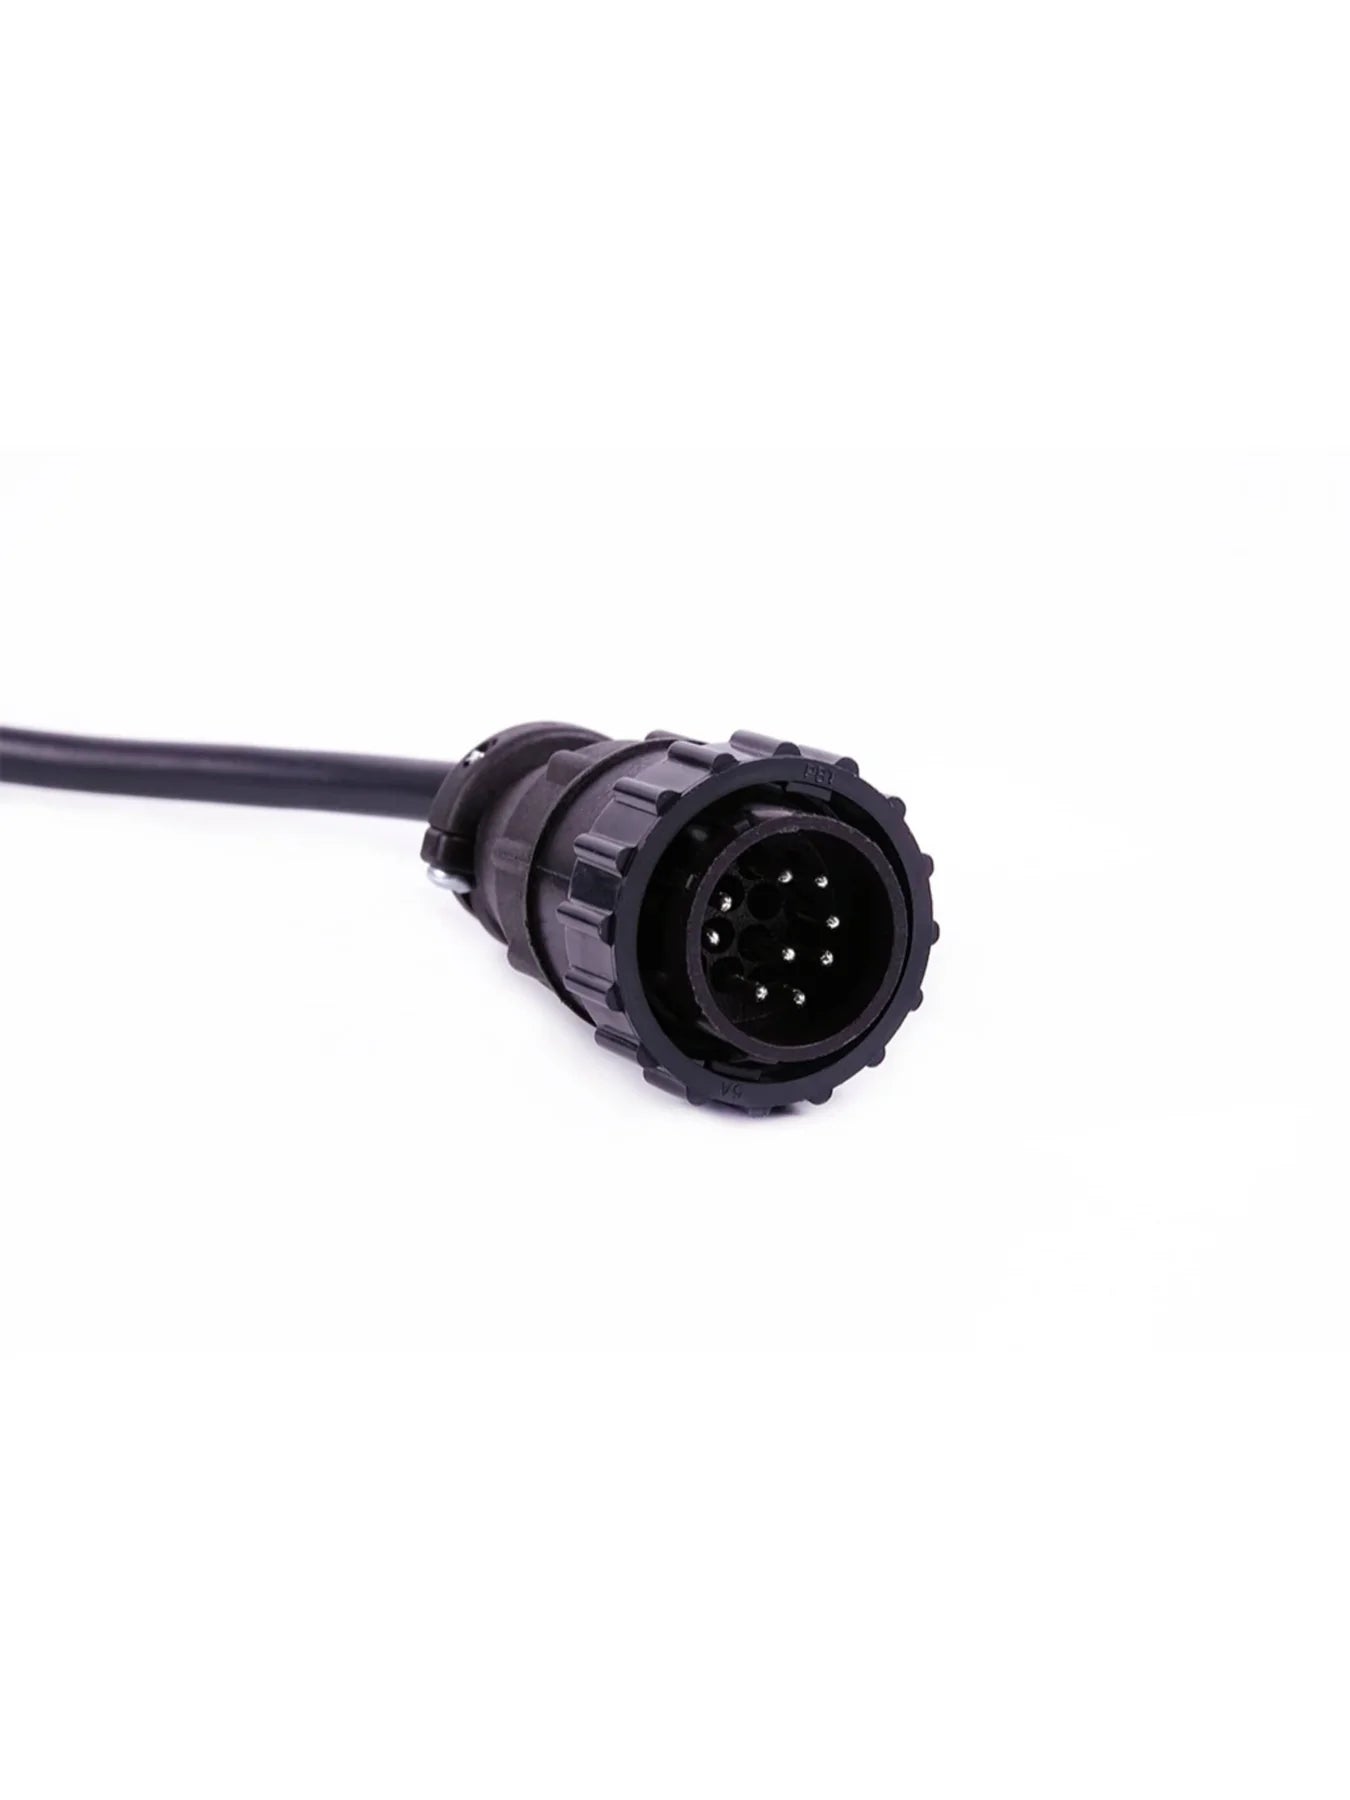 Cojali (Jaltest) JDC545A Doosan Diagnostic Cable - MPR Tools & Equipment